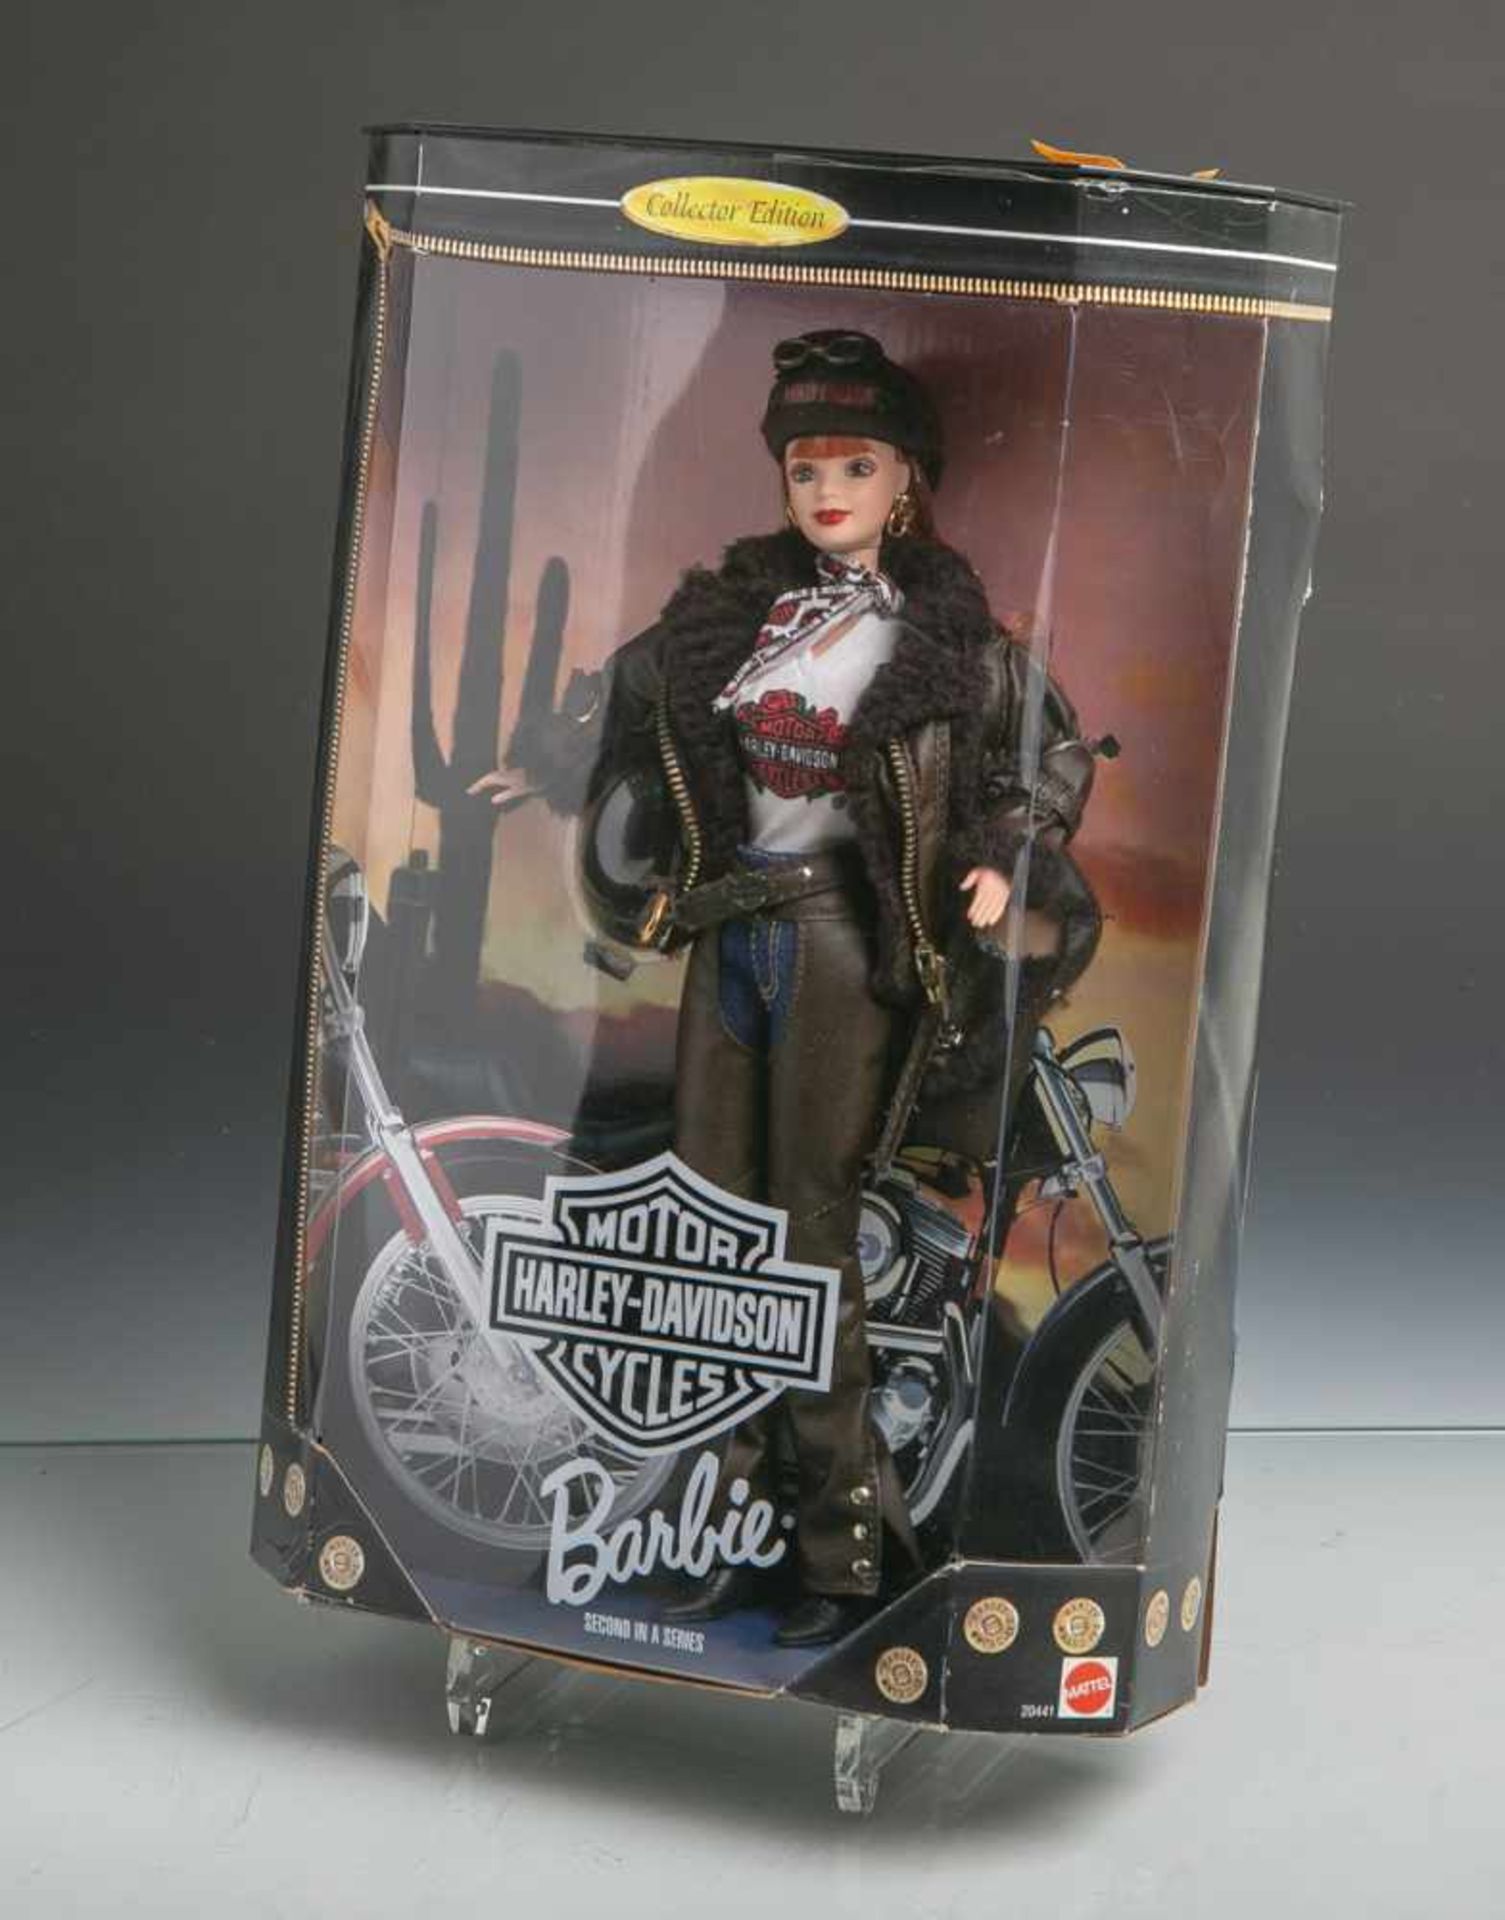 Barbie-Puppe "Harley-Davidson" (Mattel, 1998), 2. Ausgabe, USA 99700-99V, CollectorEdition,